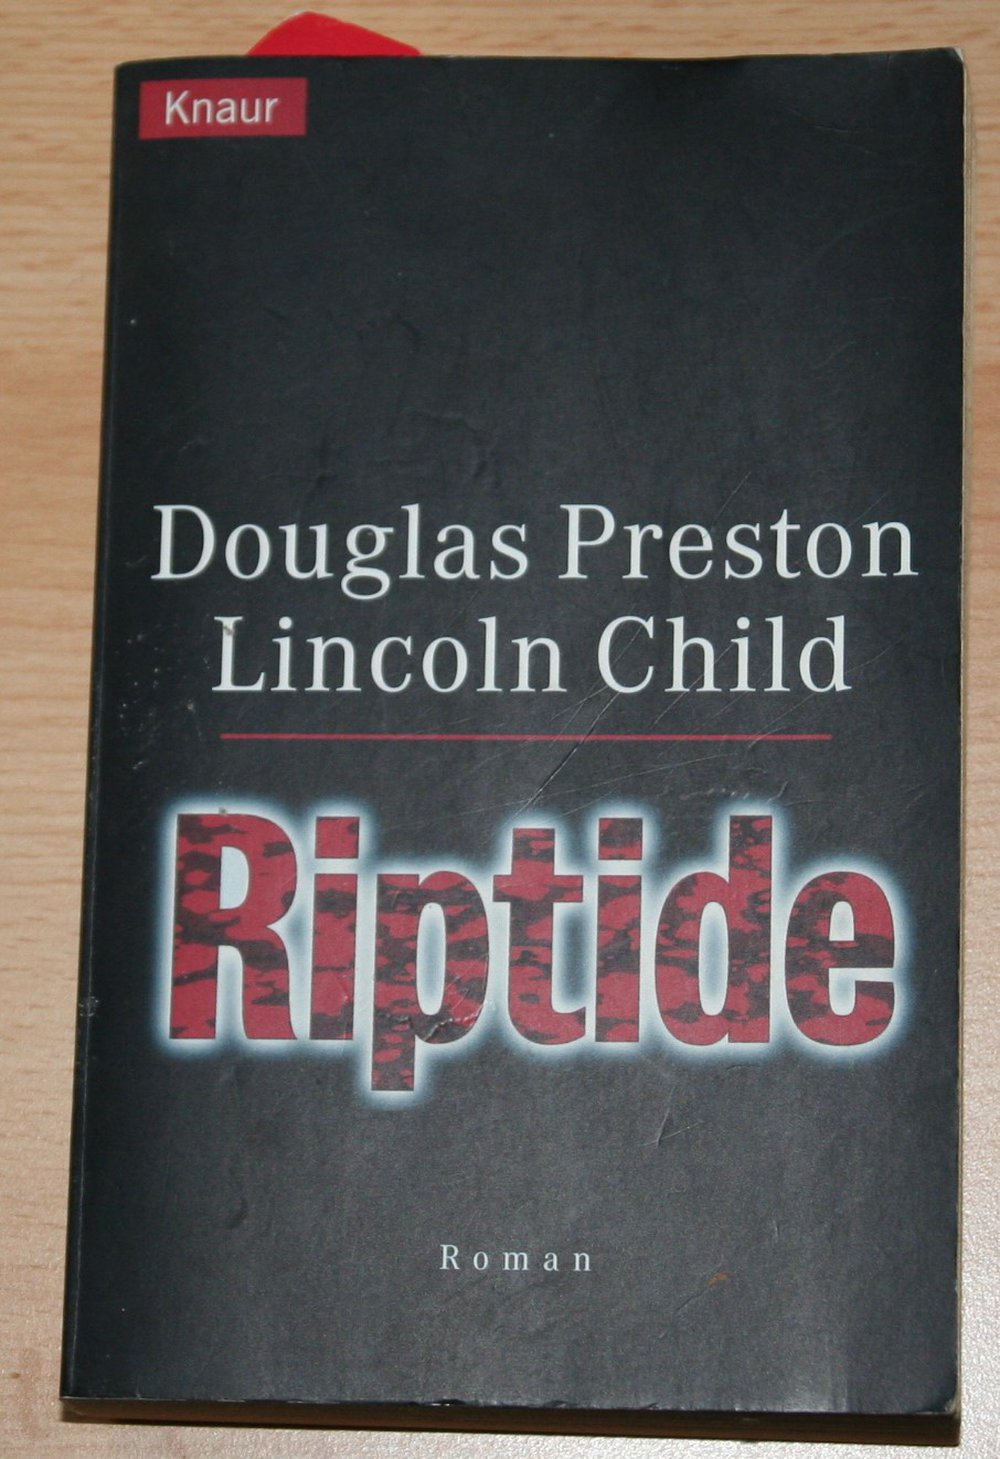 Riptide - Douglas Preston Lincoln Child